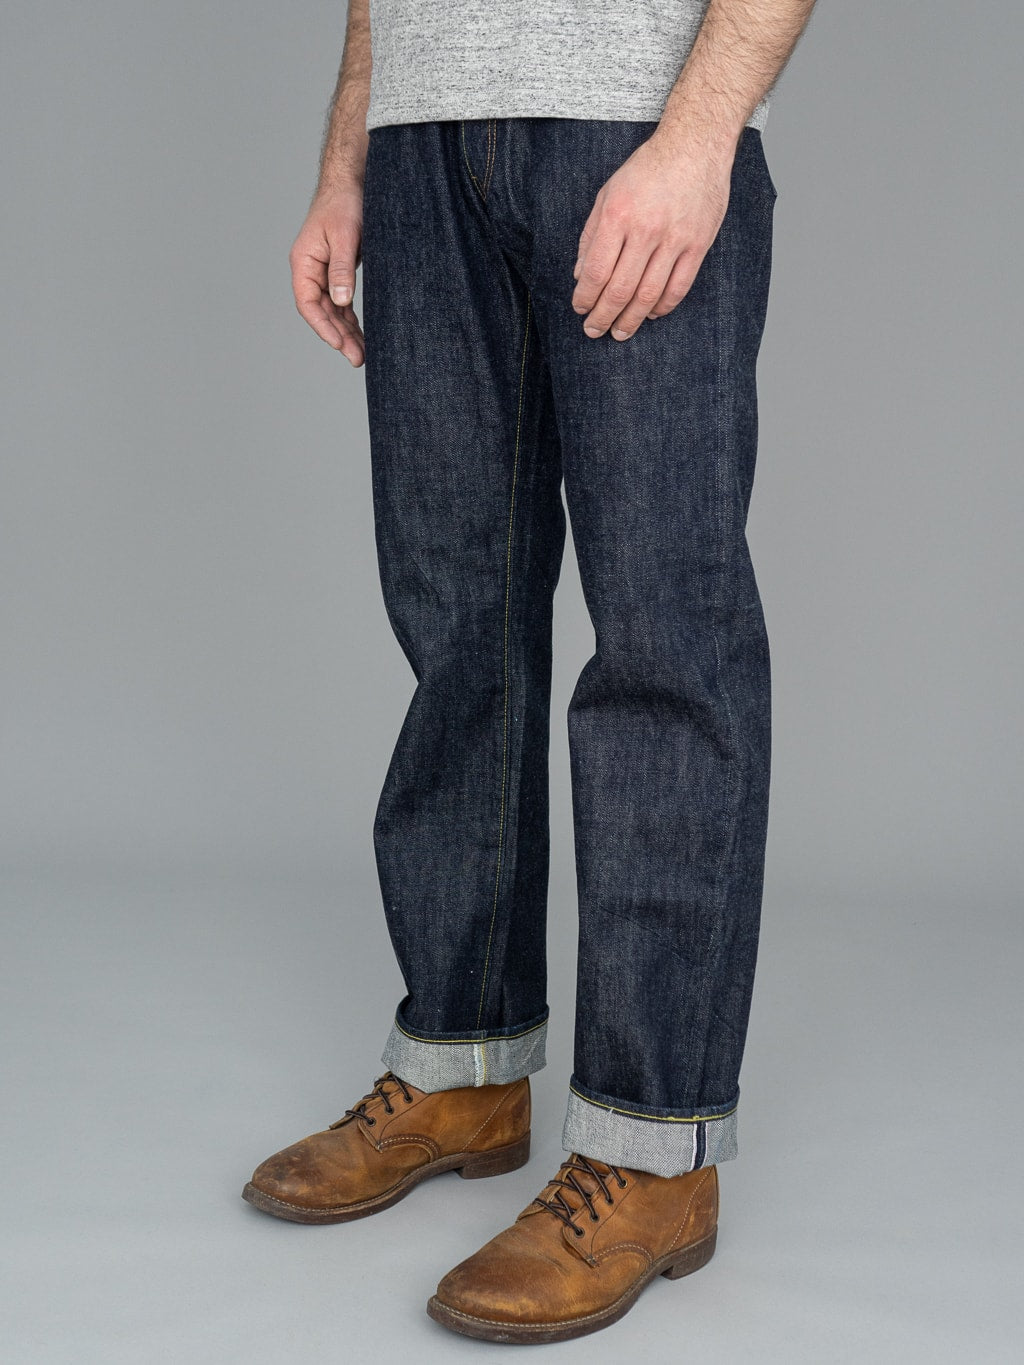 sugar cane SC41947 14.25oz denim 1947 model regular straight jeans side fit